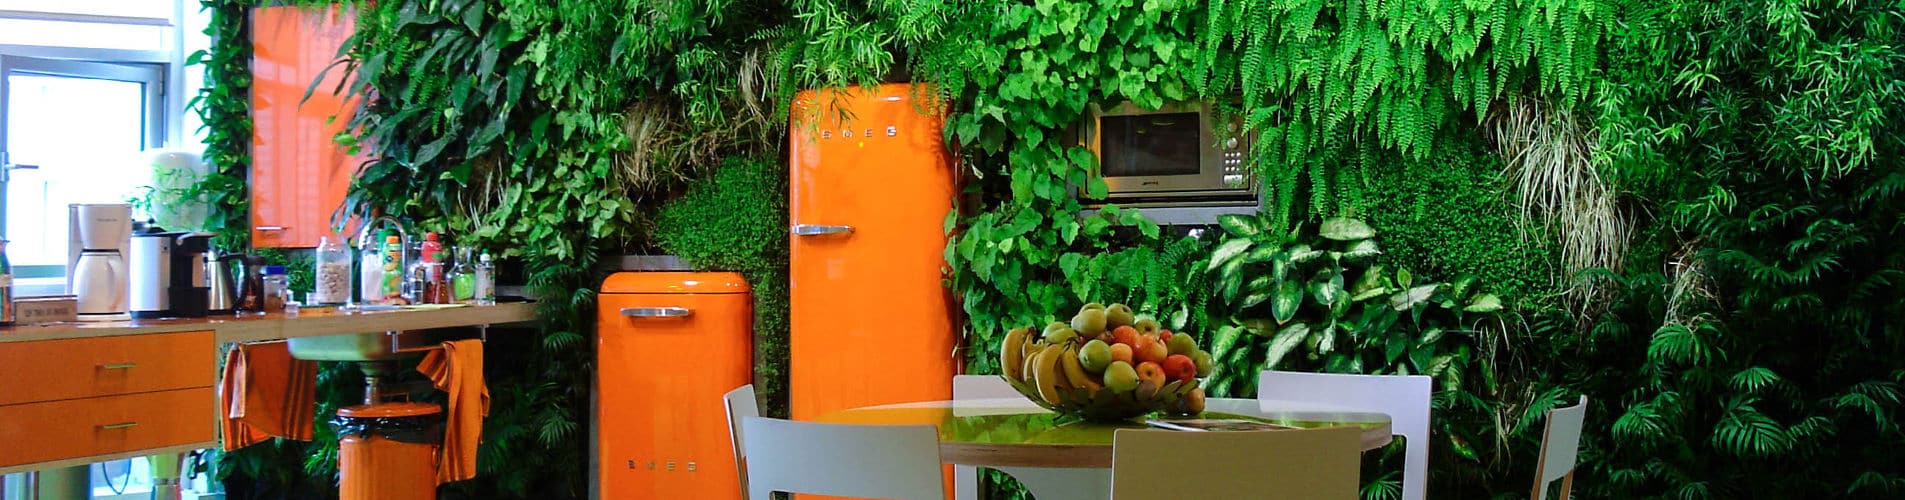 mur végétal intérieur pour une cuisine